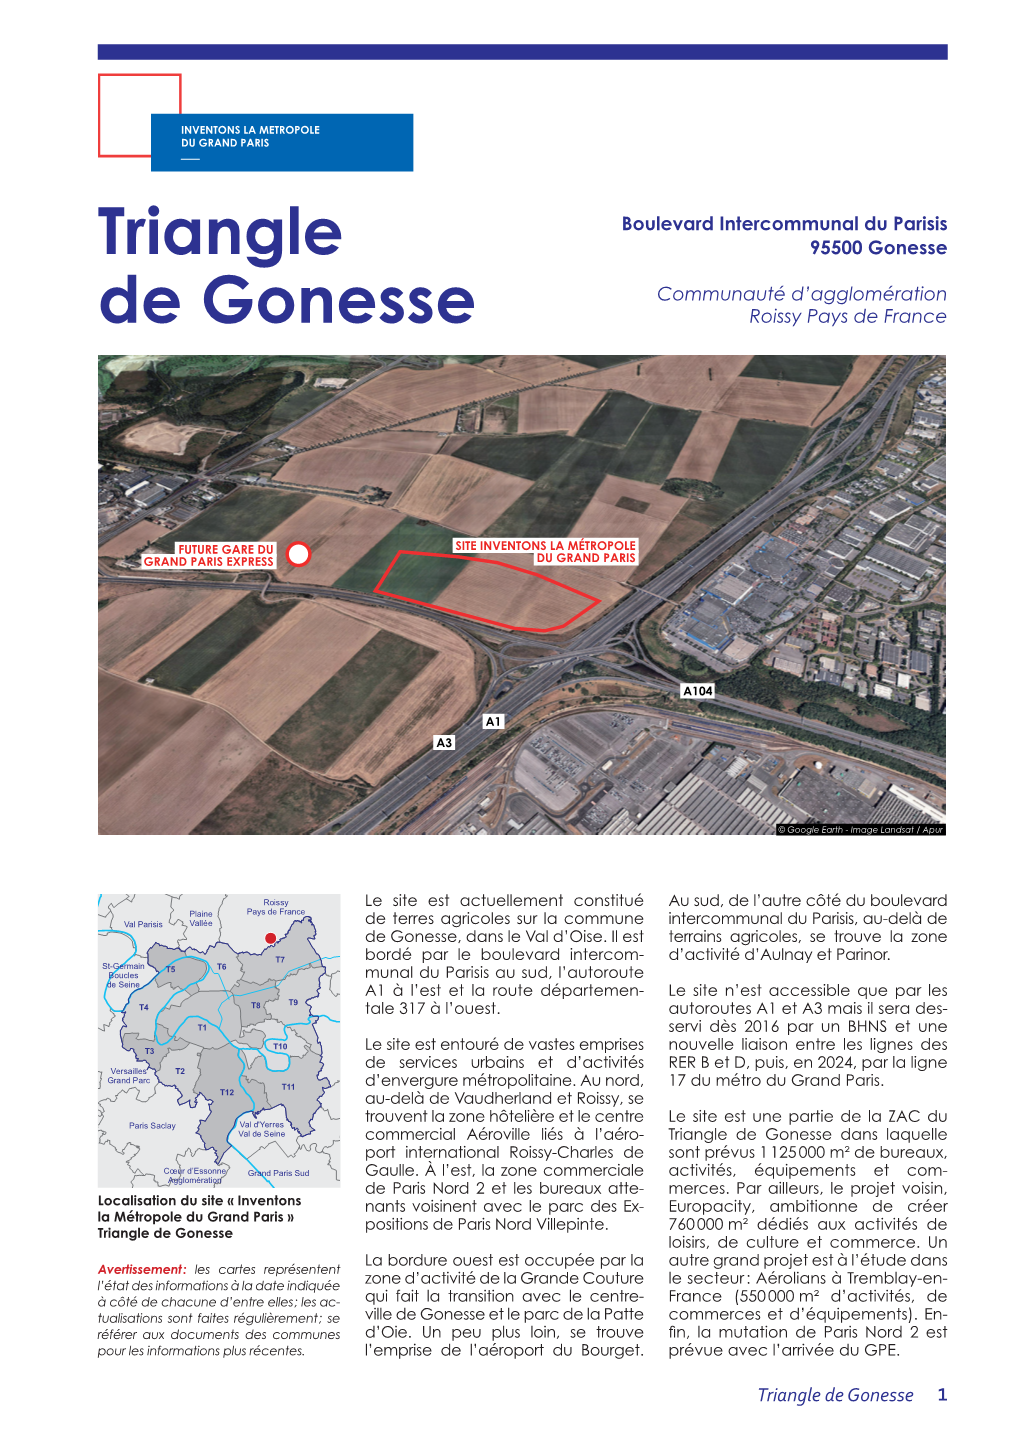 Triangle De Gonesse Dans Laquelle Port International Roissy-Charles De Sont Prévus 1 125 000 M² De Bureaux